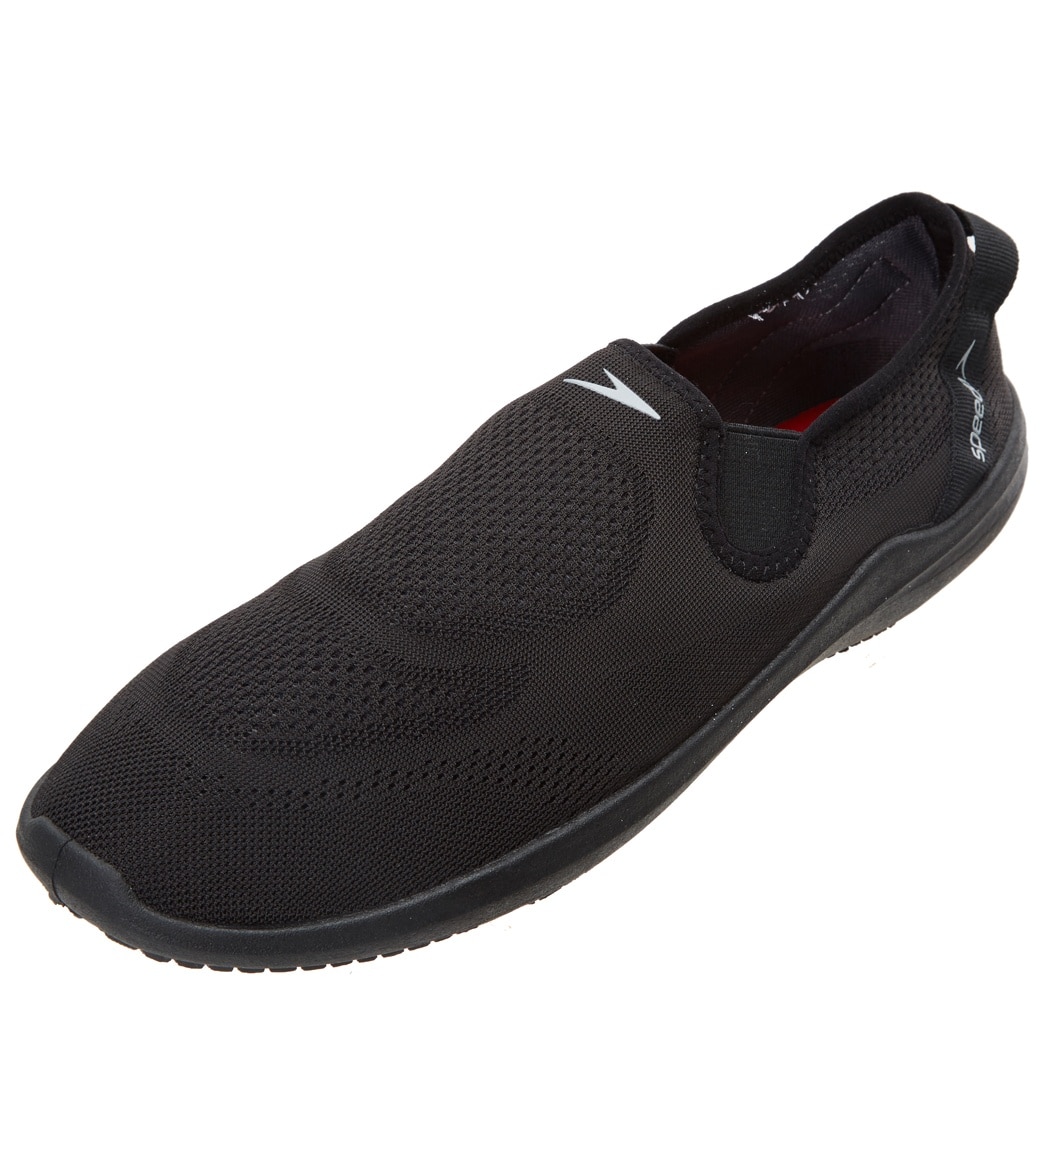 Speedo Men's Surfwalker Pro Mesh Water Shoe - Black/Black 7 - Swimoutlet.com